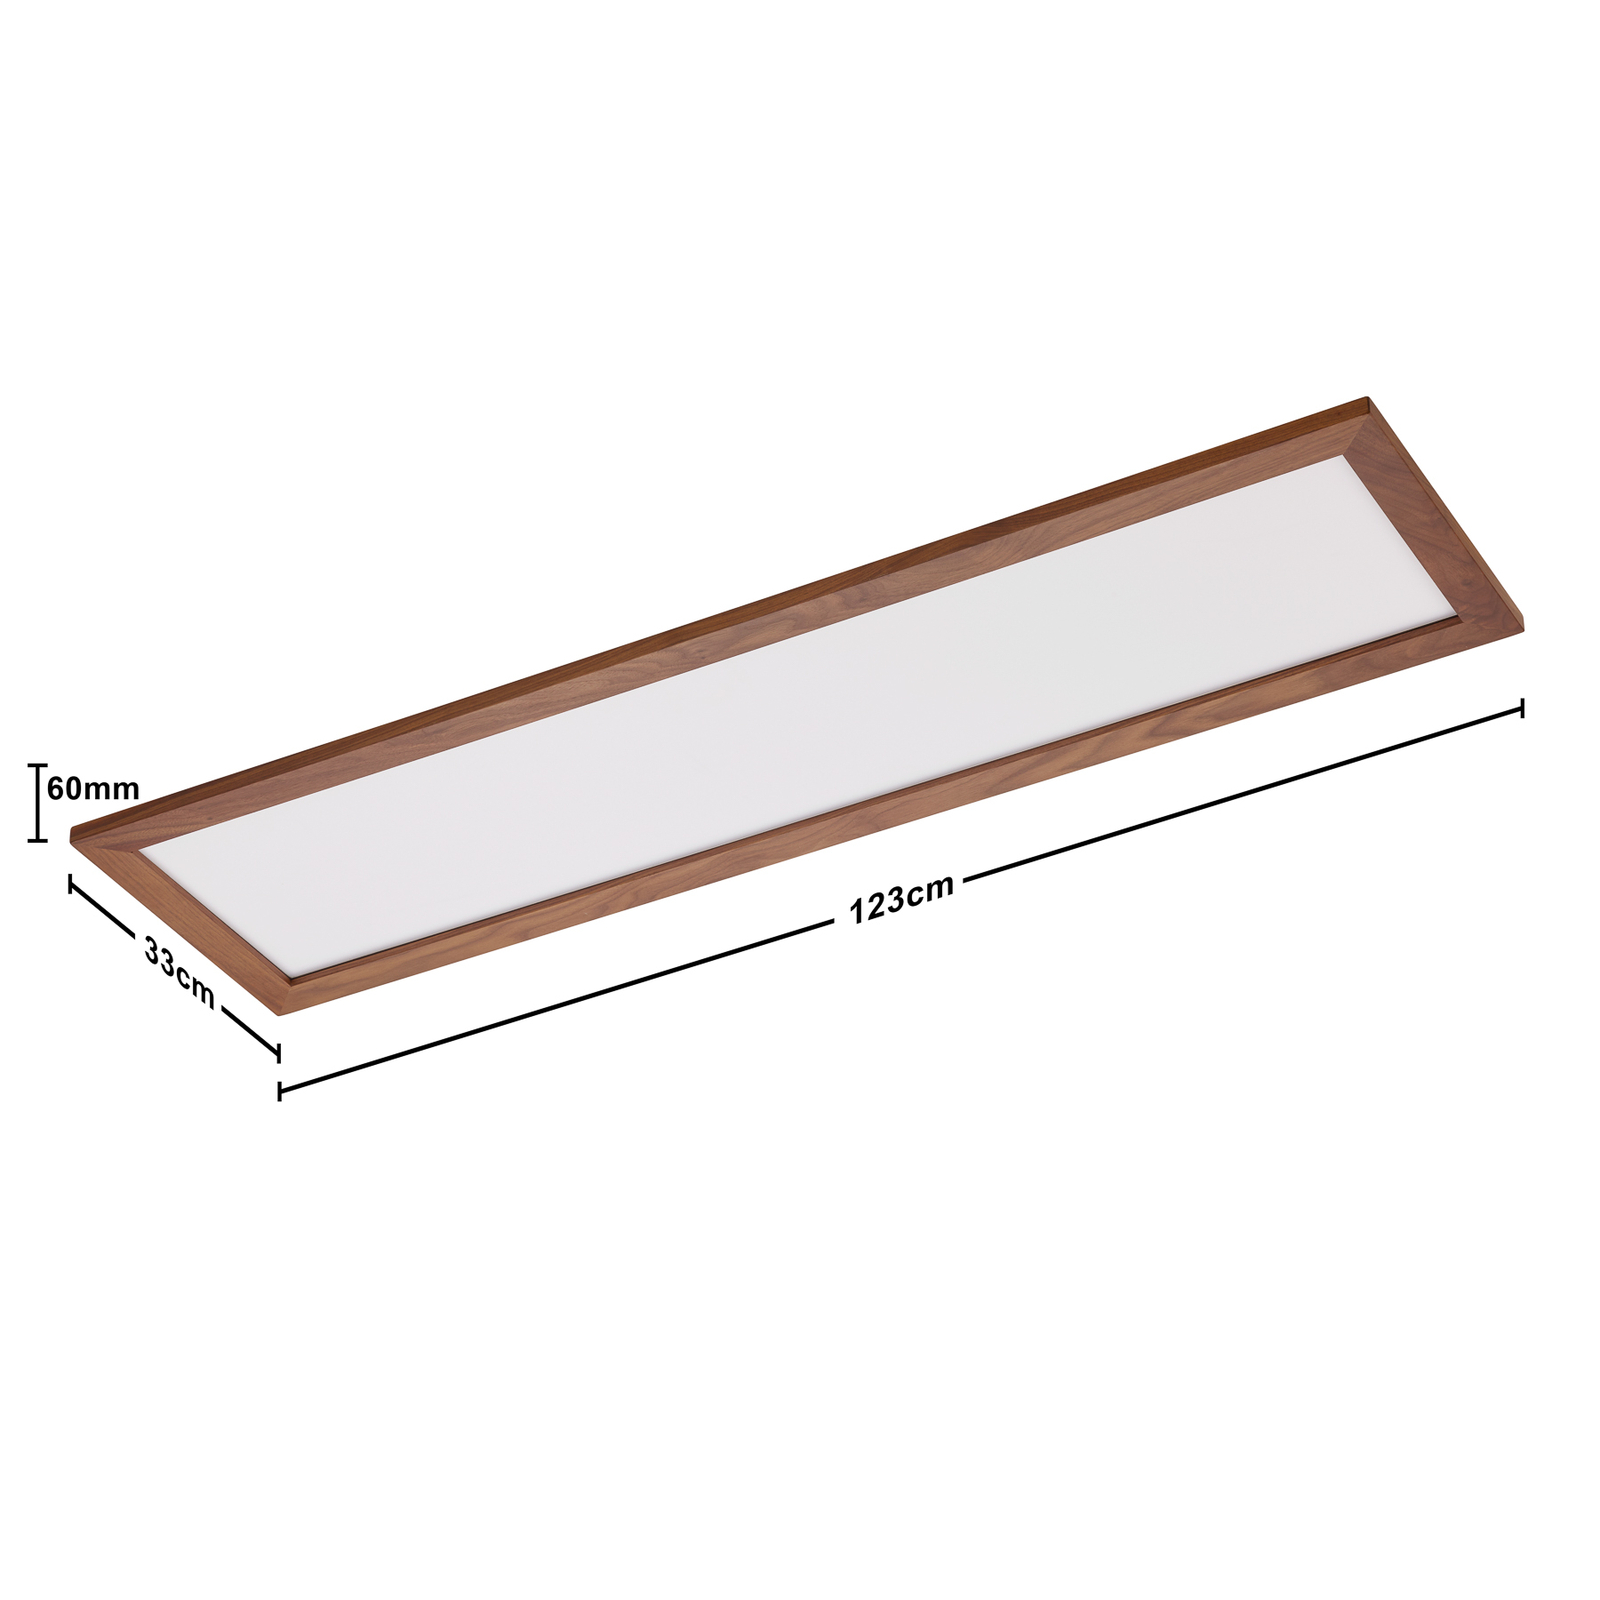 Quitani Aurinor LED panel, orech, 125 cm